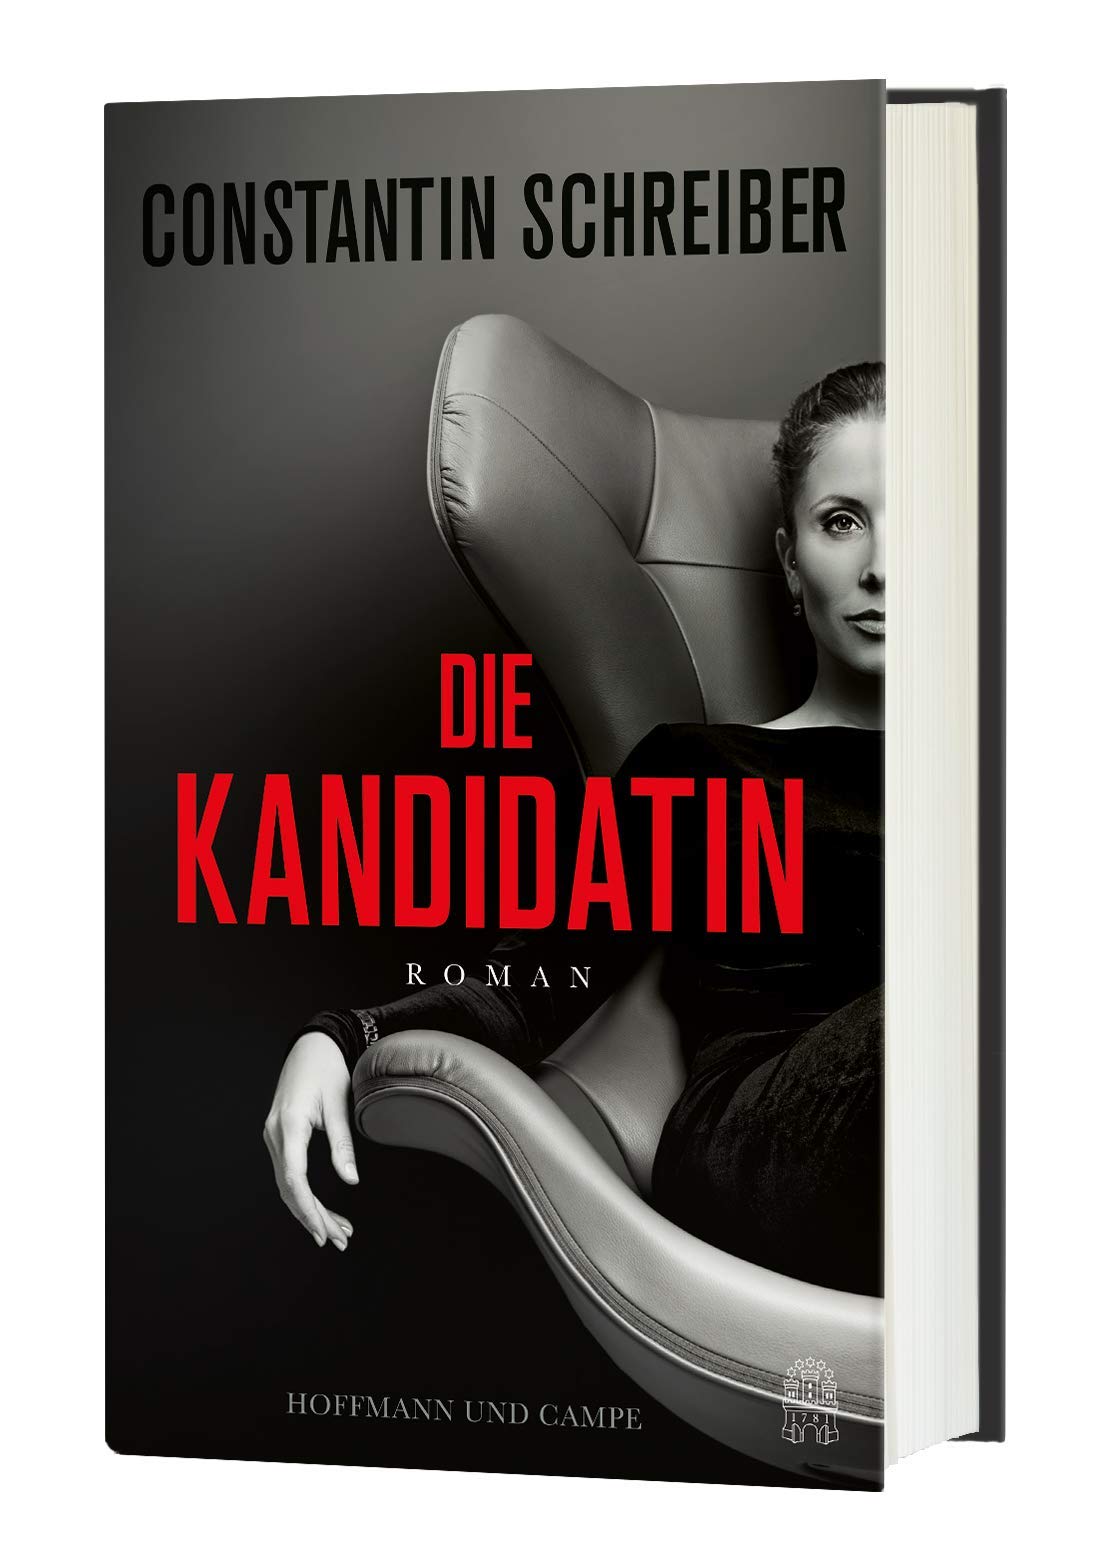 Buchcover: Constantin Schreiber, Die Kandidatin. (Foto: Hoffmann &amp; Campe Verlag 2021).